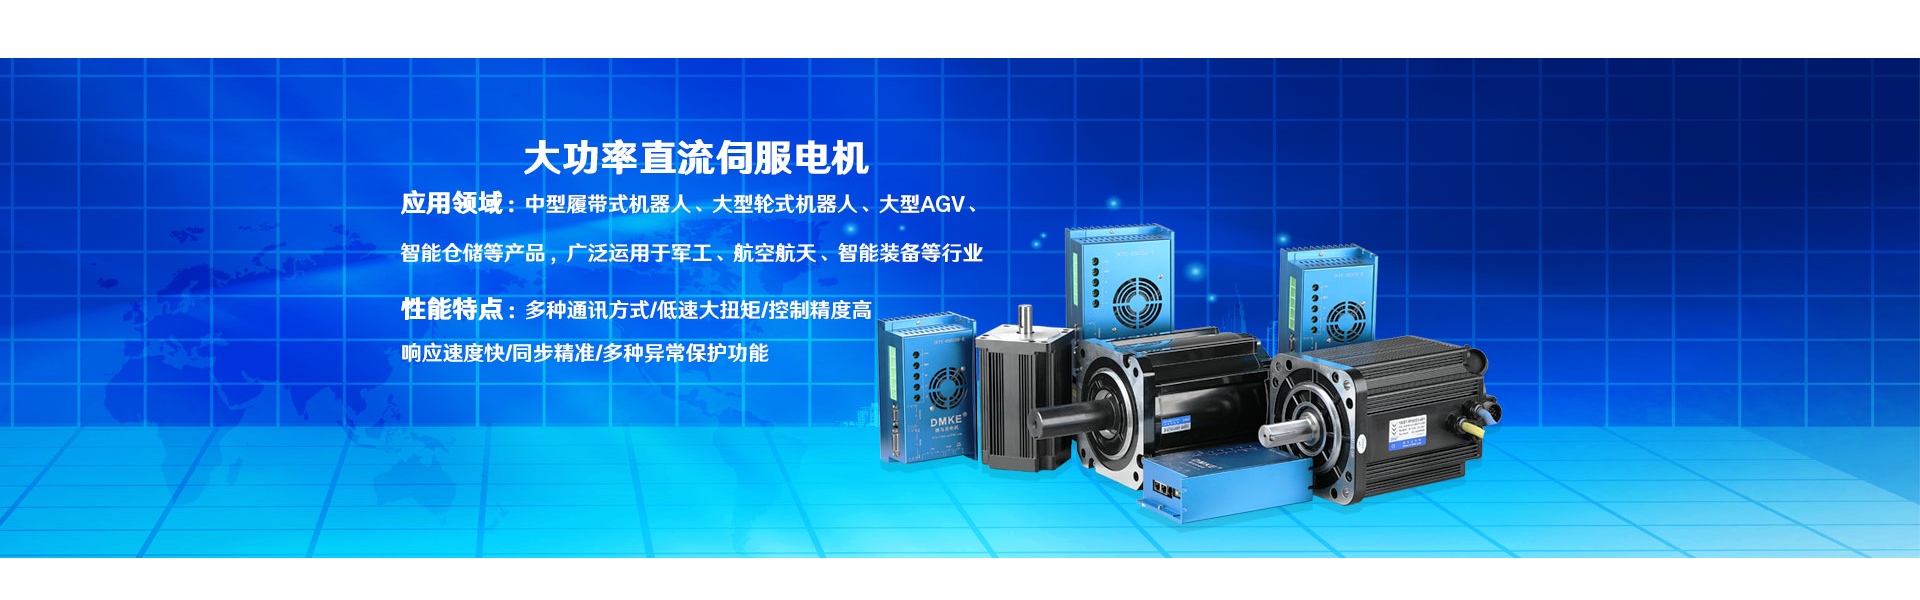 κινητήρας, κινητήρας dc, κινητήρας dc χωρίς ψήκτρες,Dongguan Joy Machinery Manufacturing Co.,Ltd.